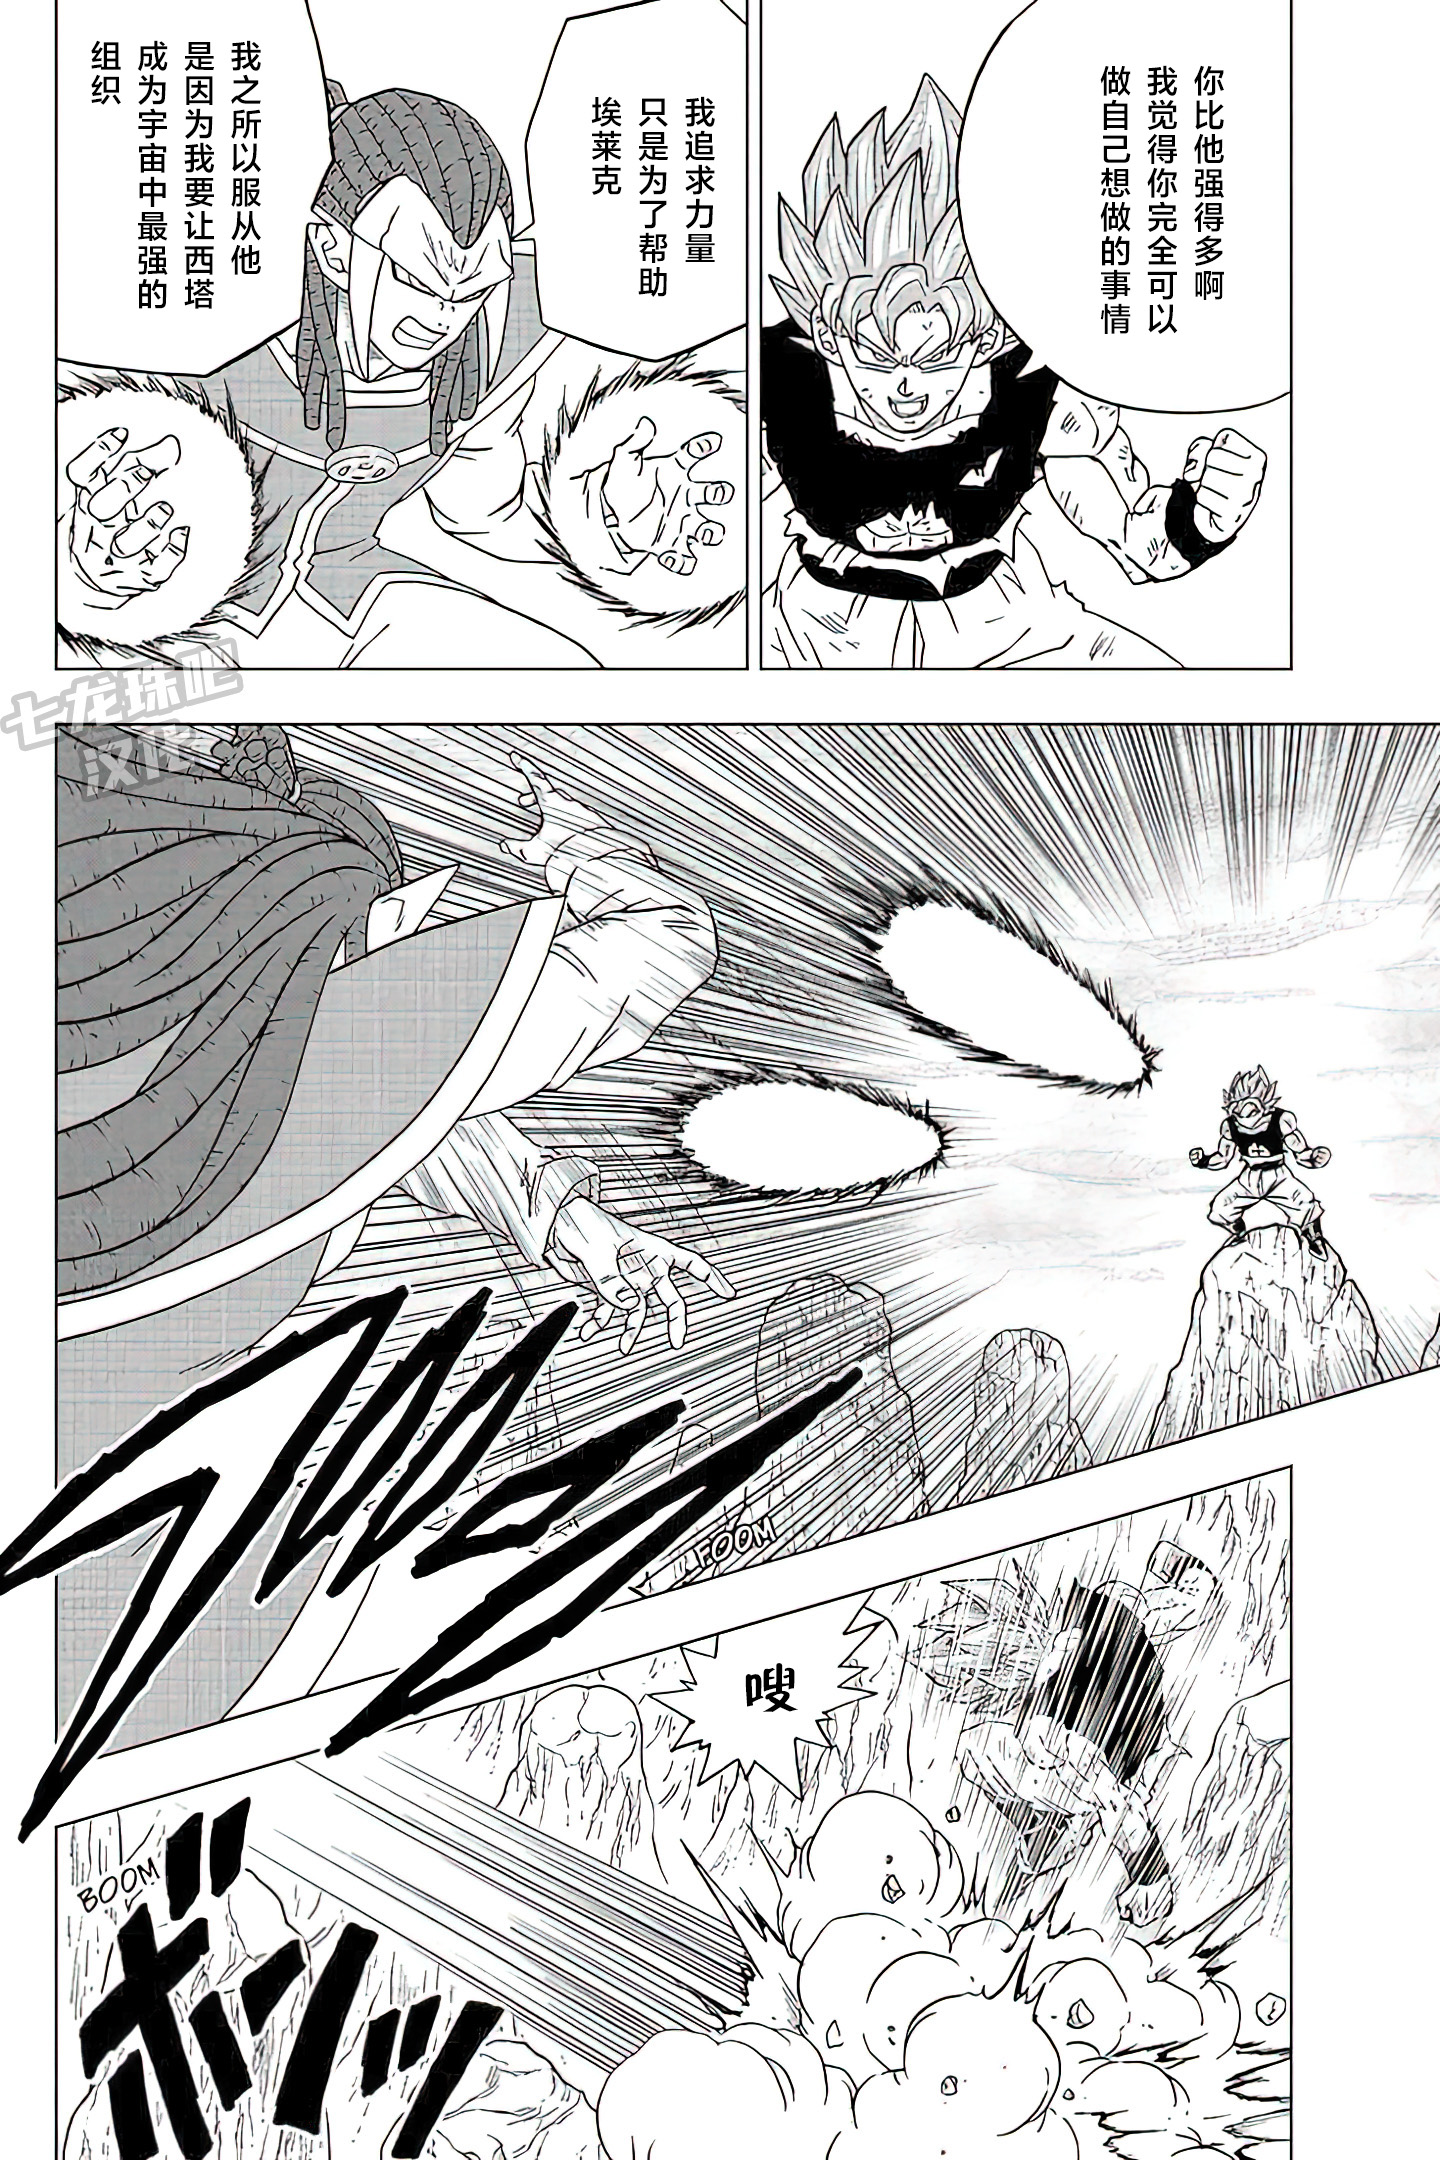 龙珠超漫画第82话:宇宙间跳来跳去的战斗,悟空的瞬间移动真好用